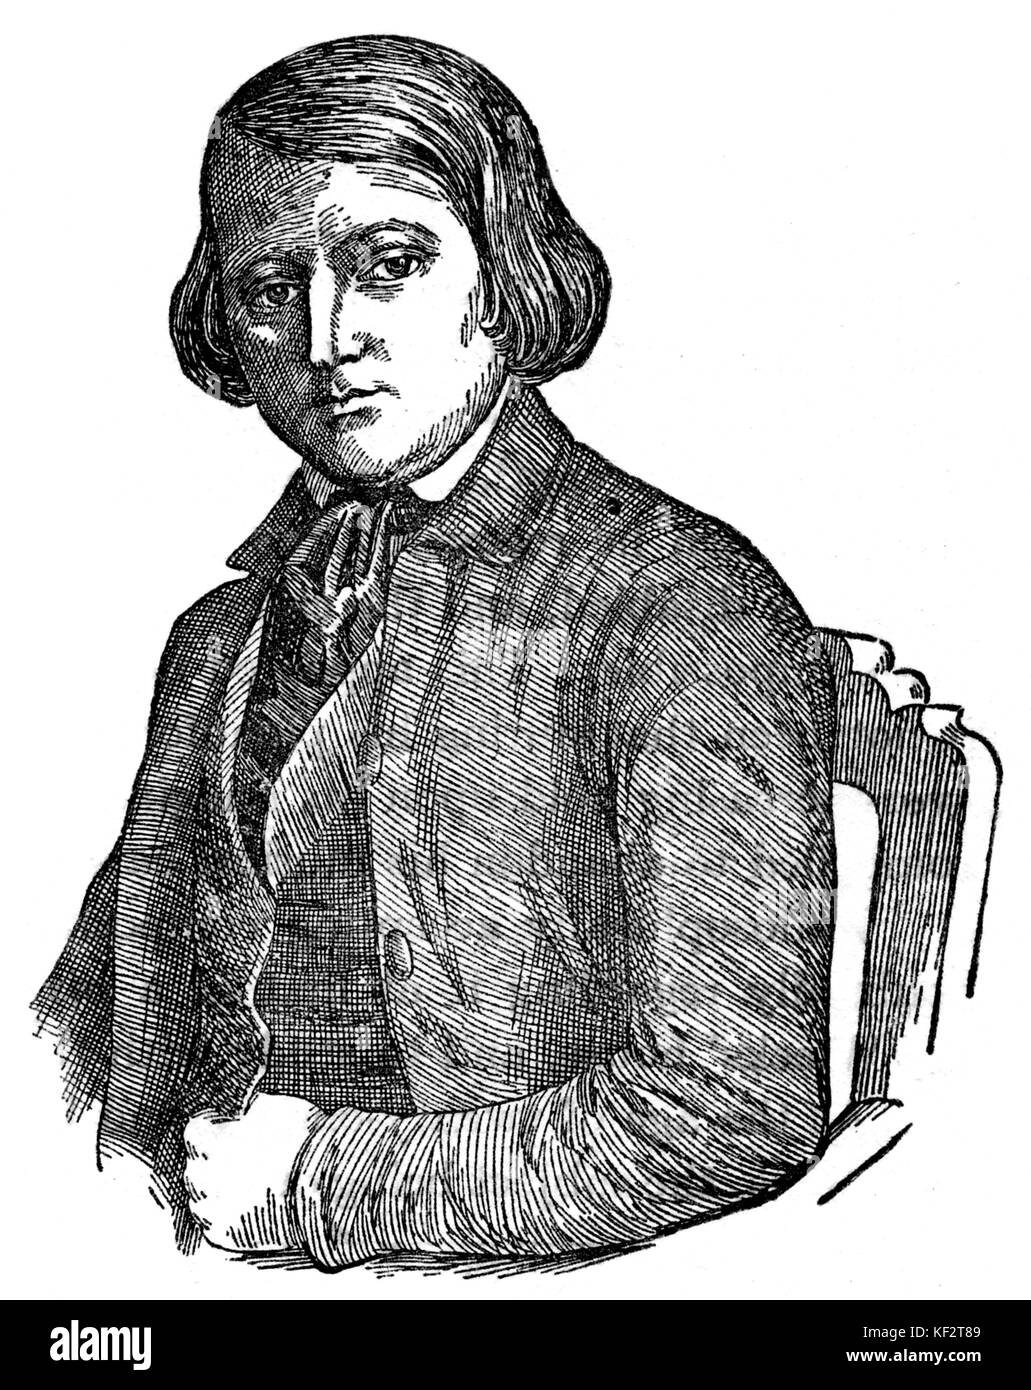 Robert Schumann comme un jeune homme. Compositeur allemand, 8 juin 1810 - 29 juillet 1856. Banque D'Images